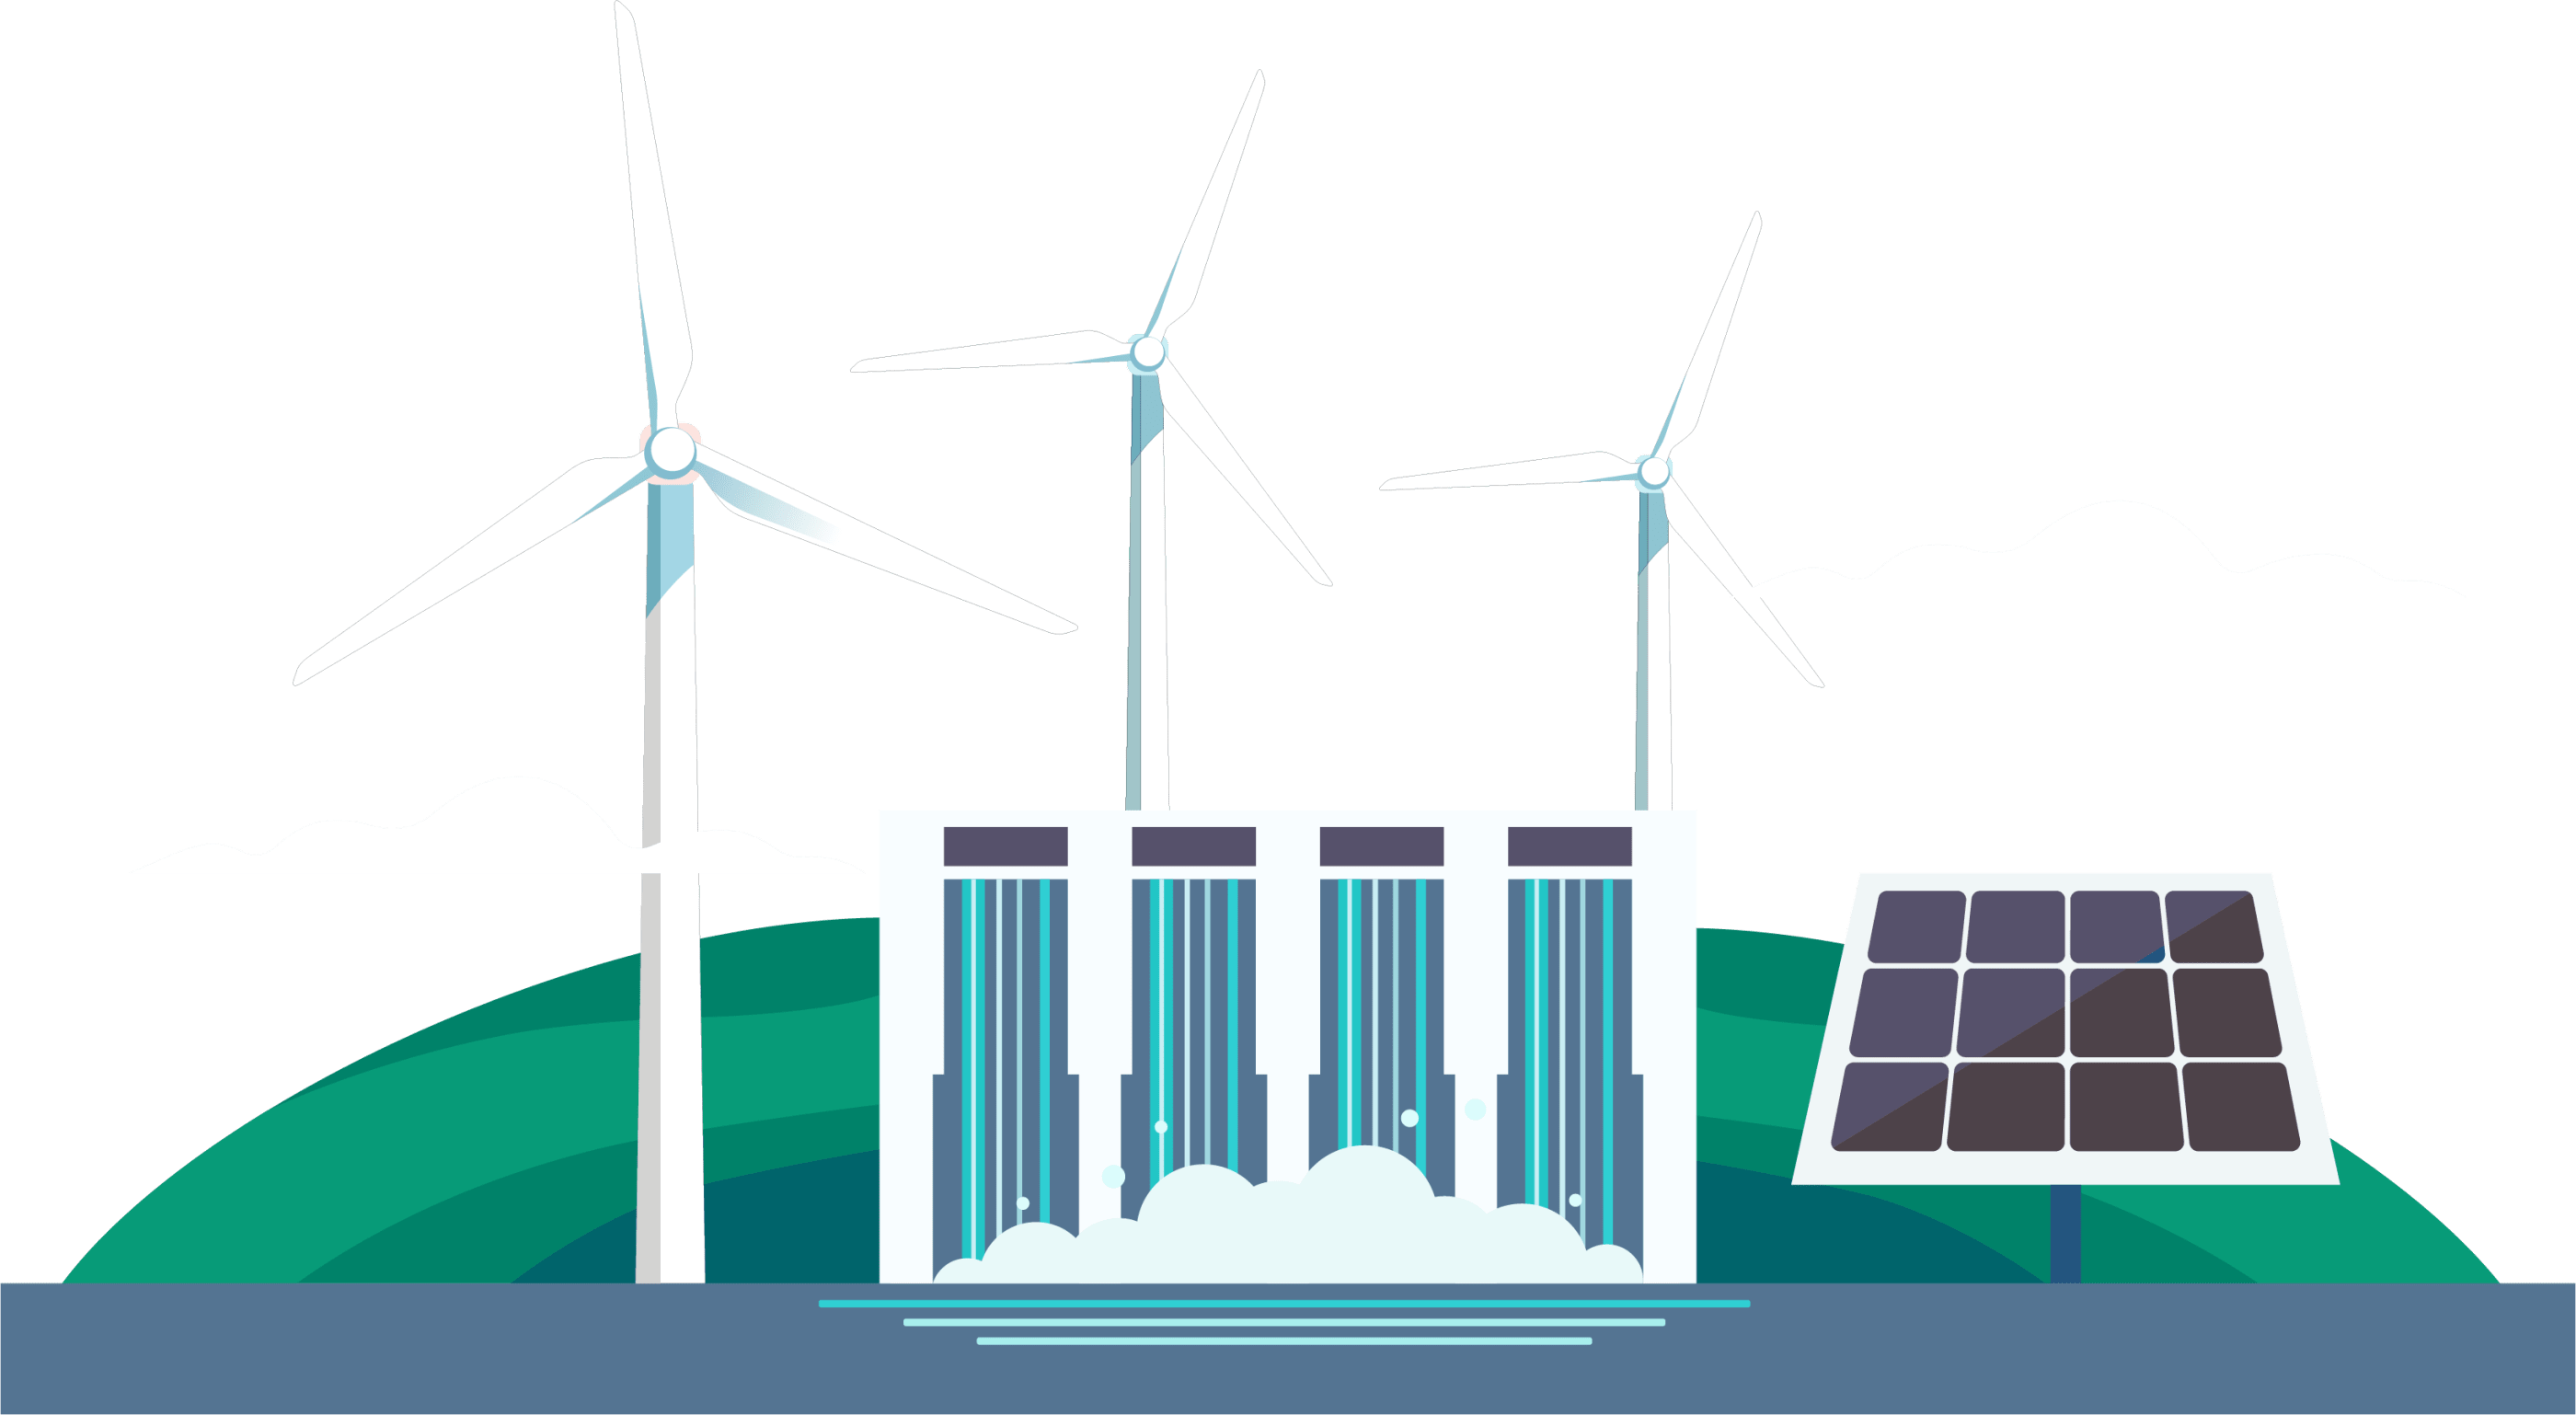 GTIP focuses on renewable energies